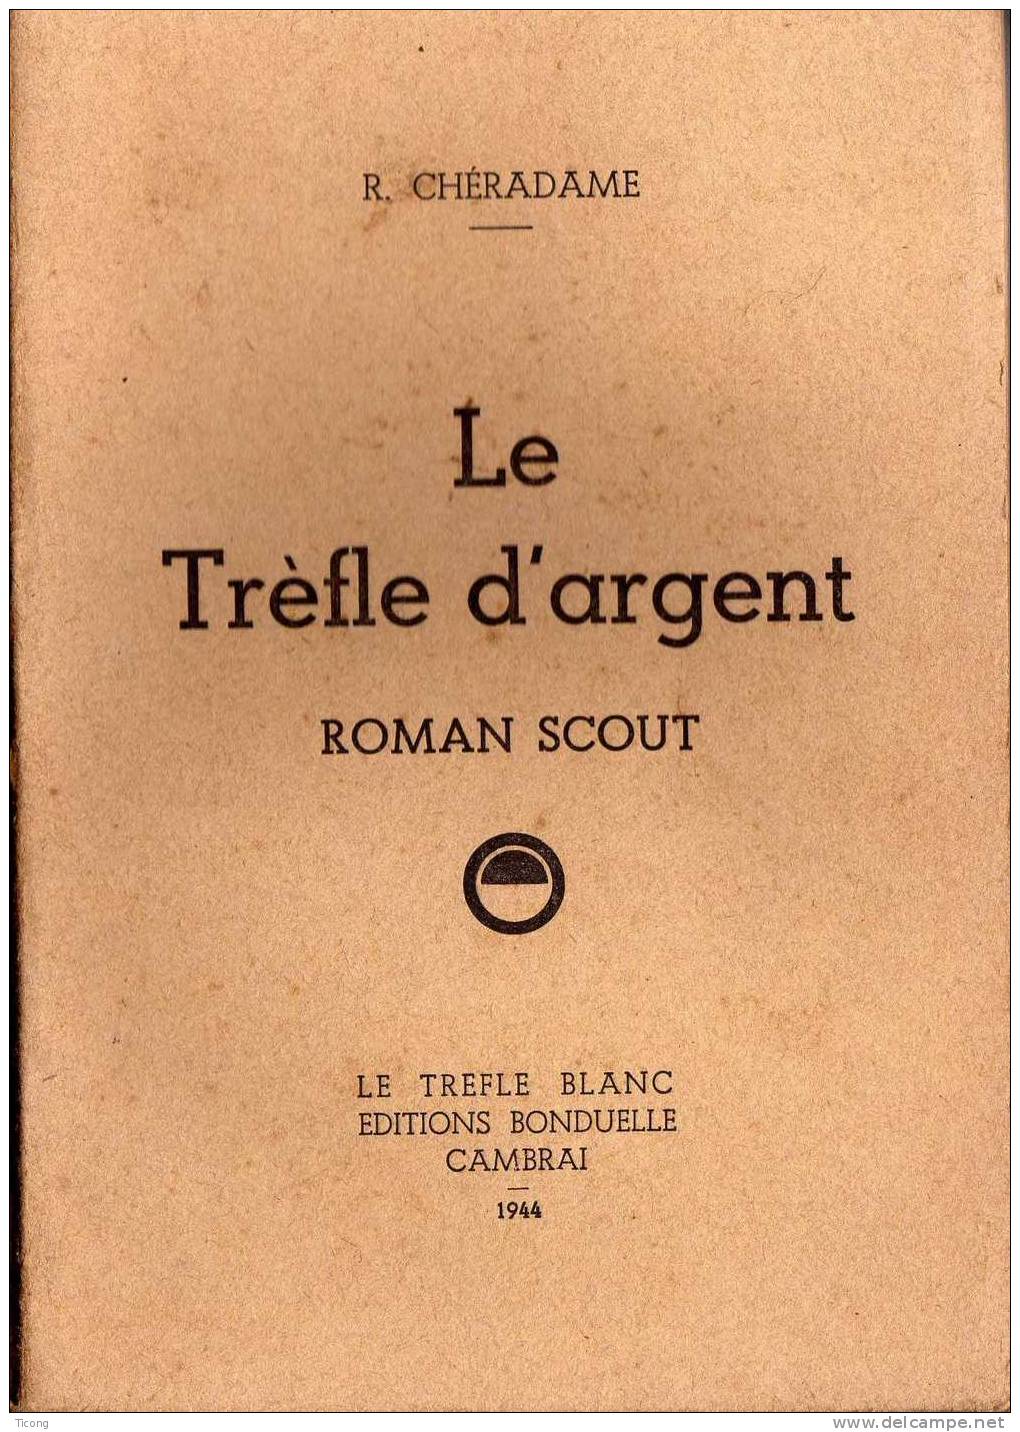 SCOUTISME- TREFLE D ARGENT ROMAN SCOUT, R CHERADAME    - 1ERE EDITION 1944  - LE TREFLE BLANC EDITIONS BONDUELLE CAMBRAI - Scouting